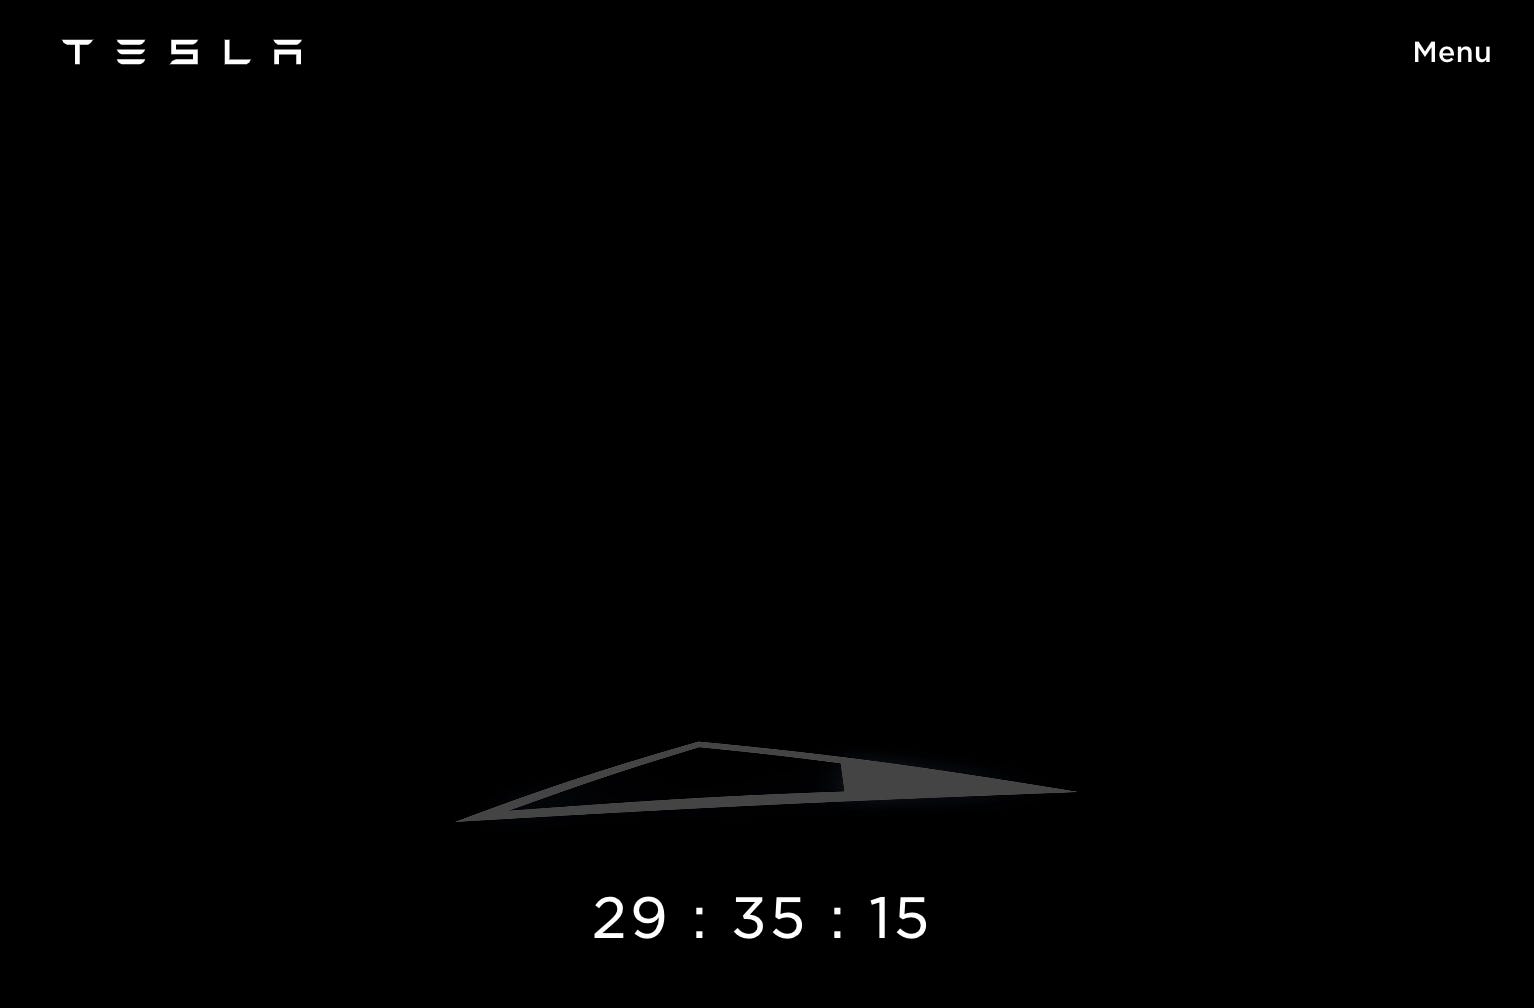 Tesla Cybertruck-Reservierungsseite mit Countdown-Uhr